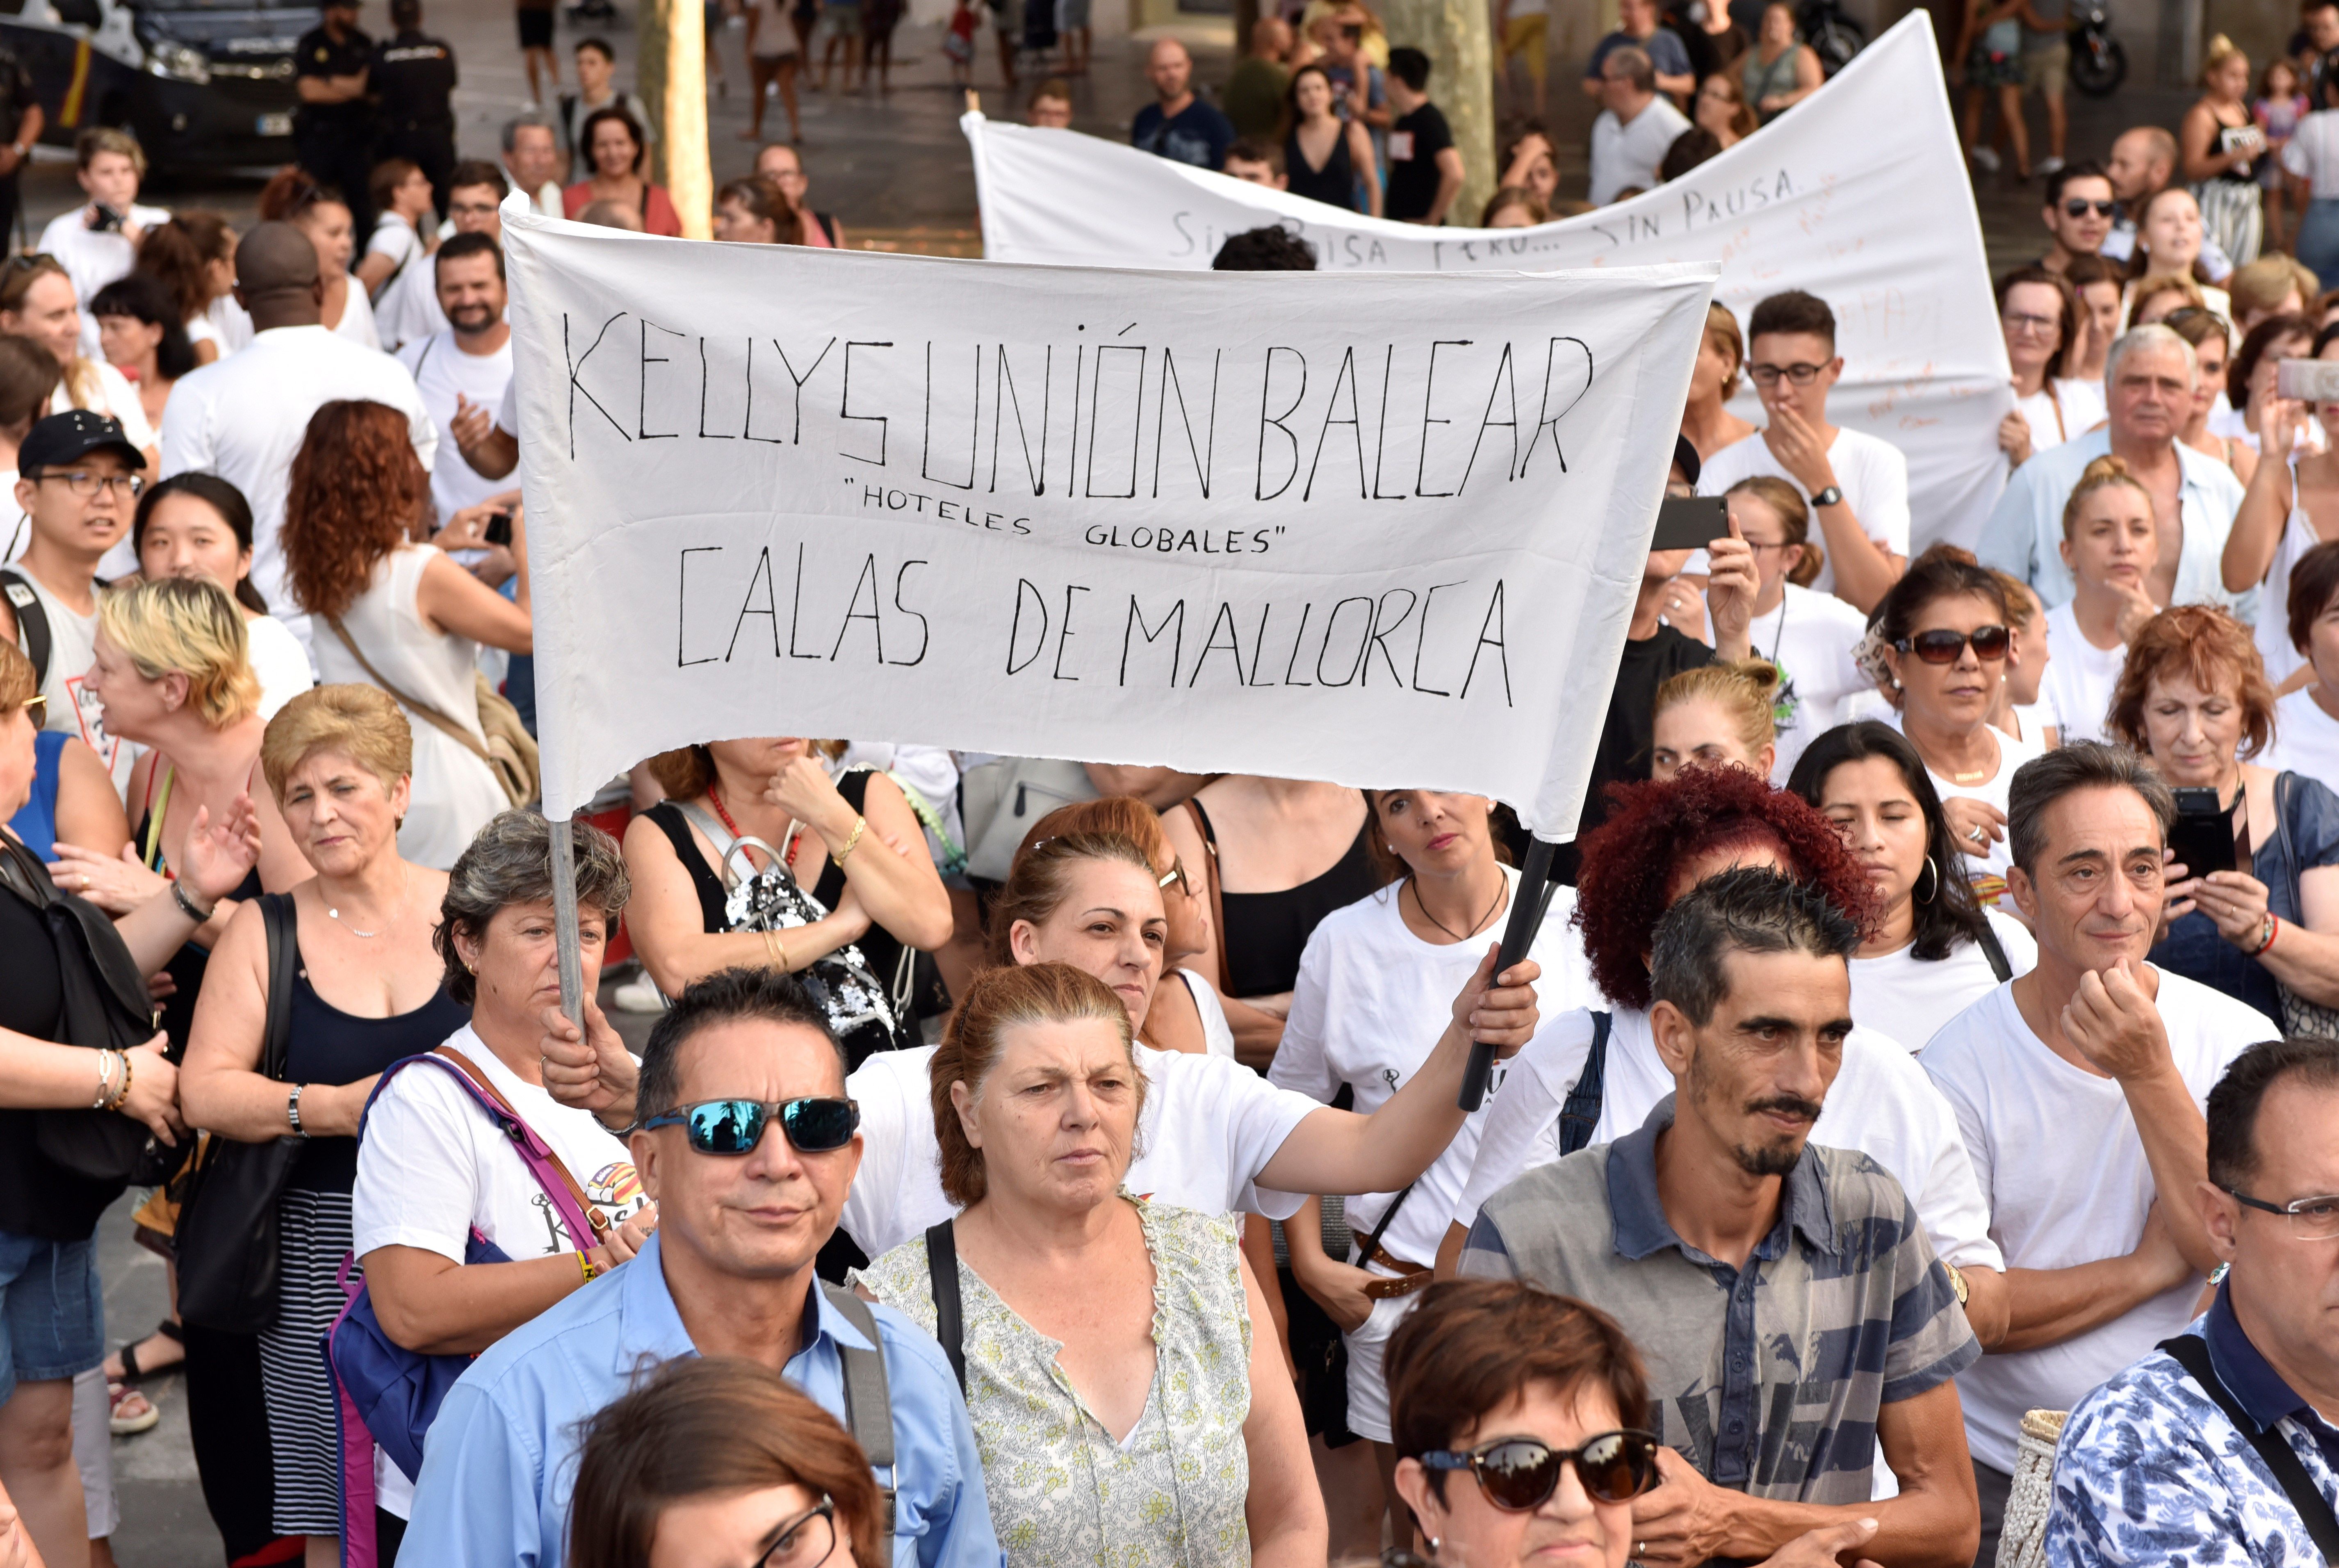 Concentración convocada por Kellys Confederadas de Baleares en la Plaza de España de Palma el pasado 25 de agosto, para exigir la jubilación anticipada y menos carga de trabajo y rechazar la explotación laboral, bajo el lema "Estas somos nosotras". EFE/Ar